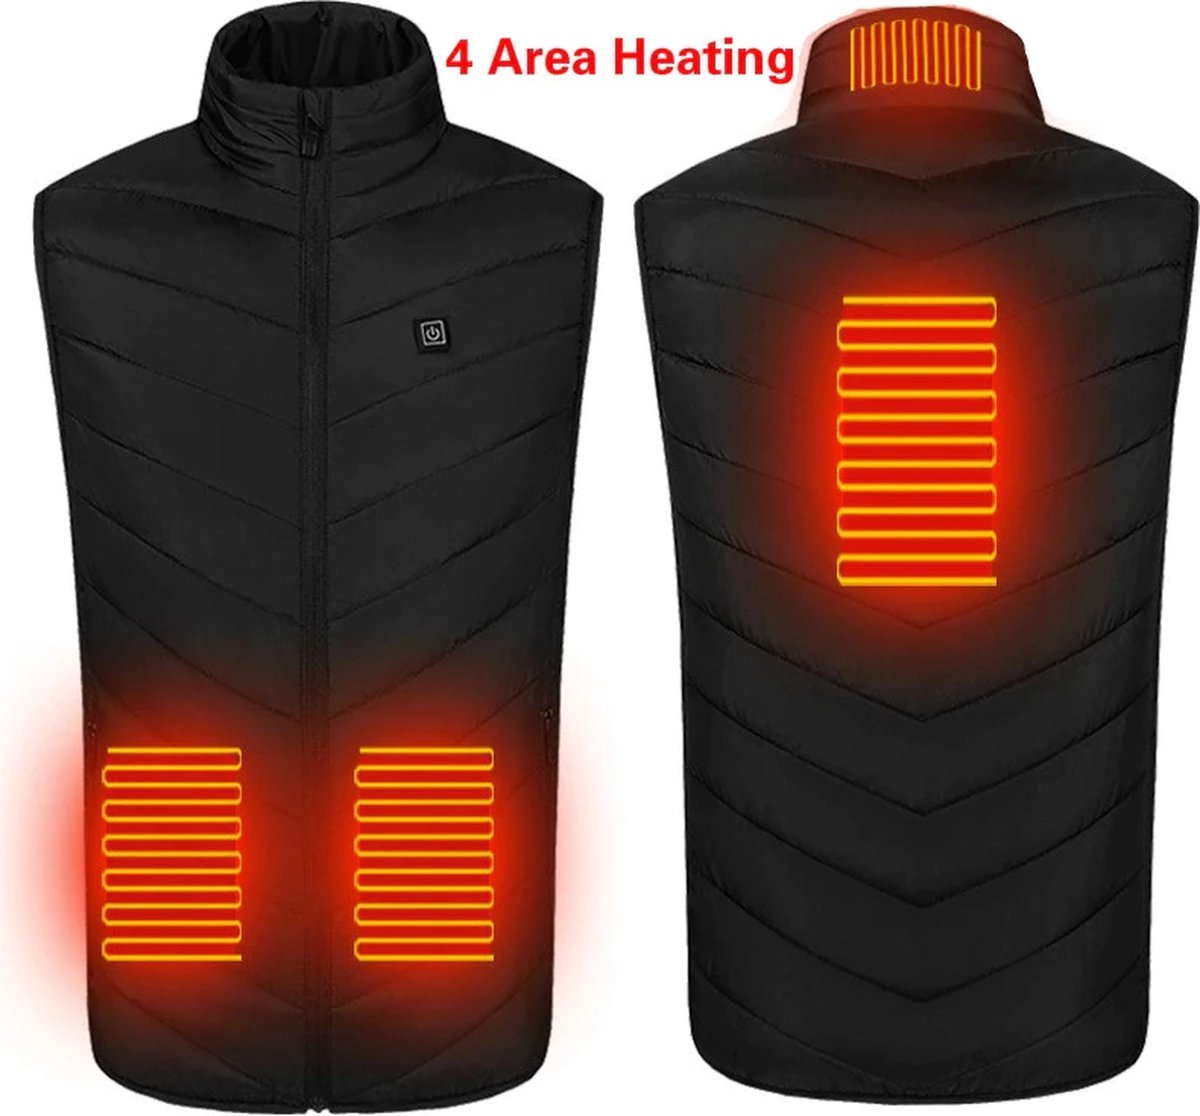 verwarmde bodywarmer - verwarmd vest - warmte vest - elektrisch verwarmd vest - verwarmde kleding - verwarmde jas - thermo vest - XL